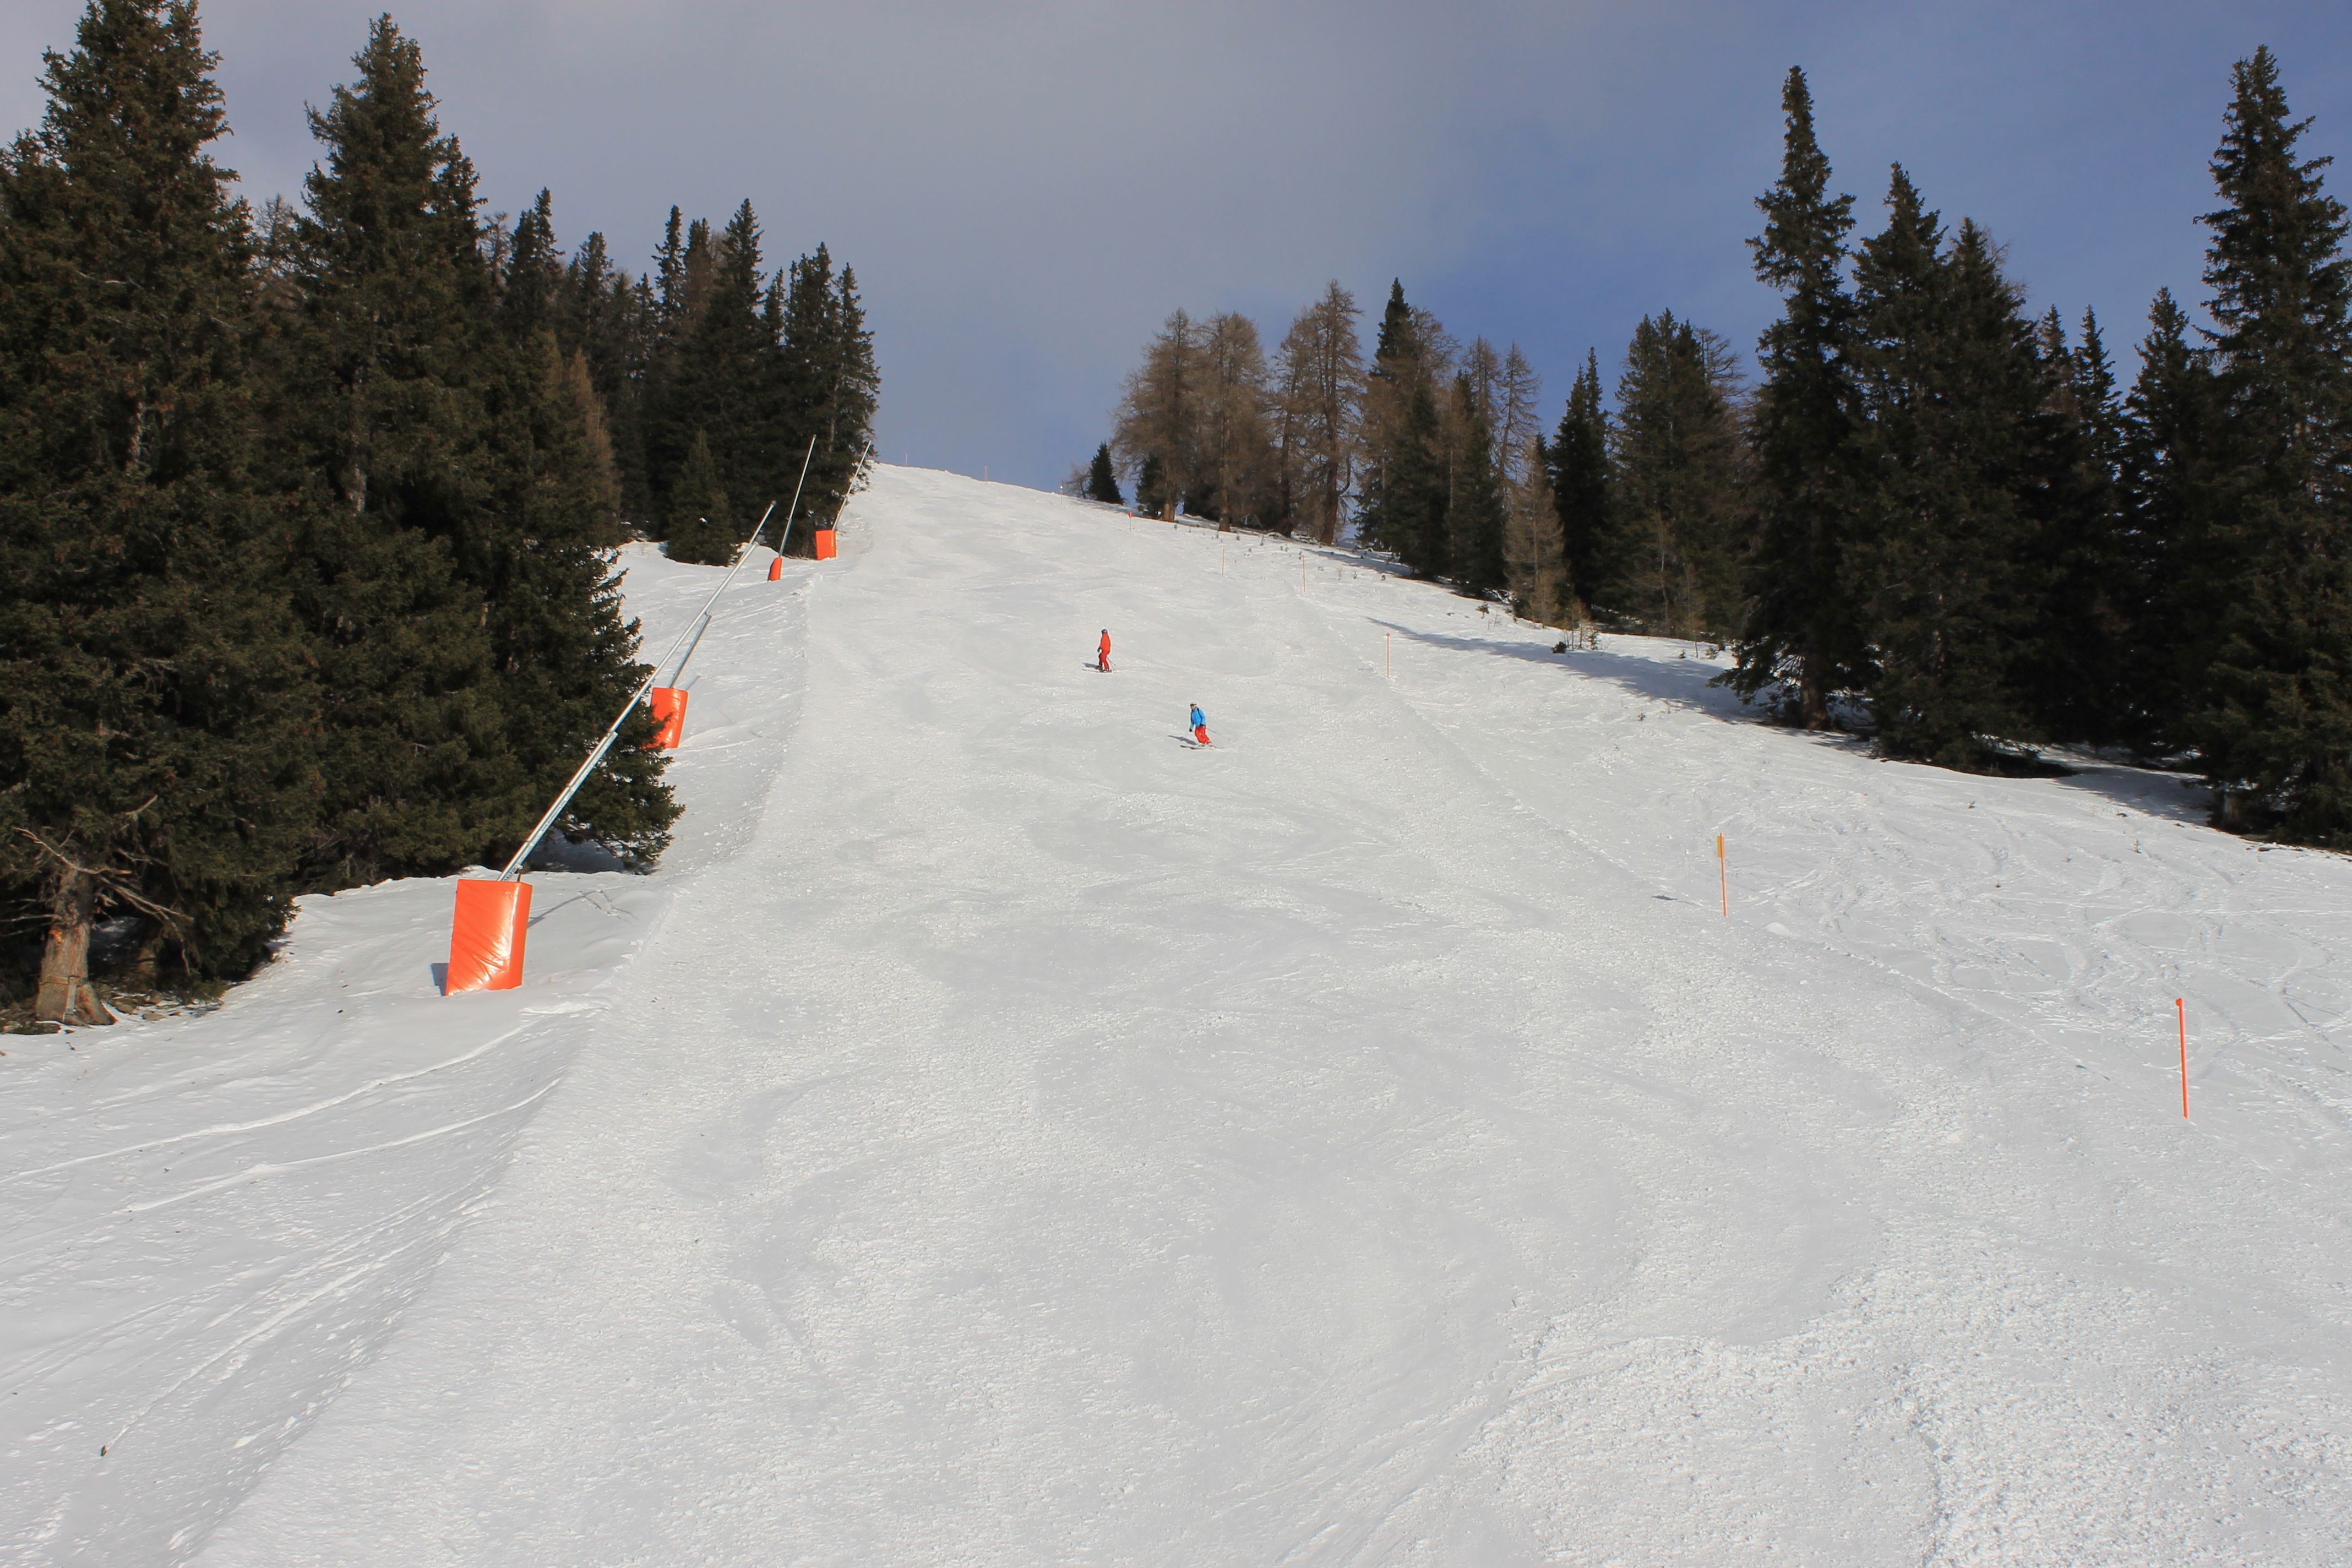 De pistes bij de Lawensbahn verschillen van sneeuwkwaliteit. Op de foto is de rode 133 te zien die er prima bij lag, de blauwe 131 beschikte over redelijk wat bruine plekken